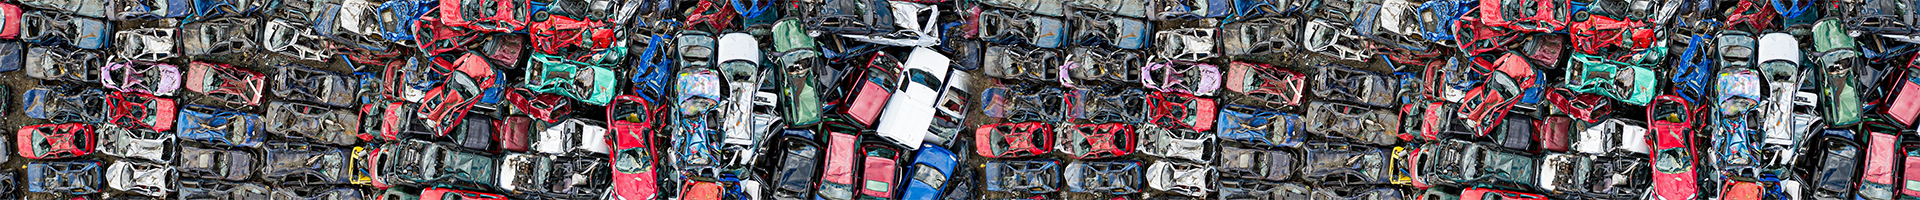 scrap-car-recycling